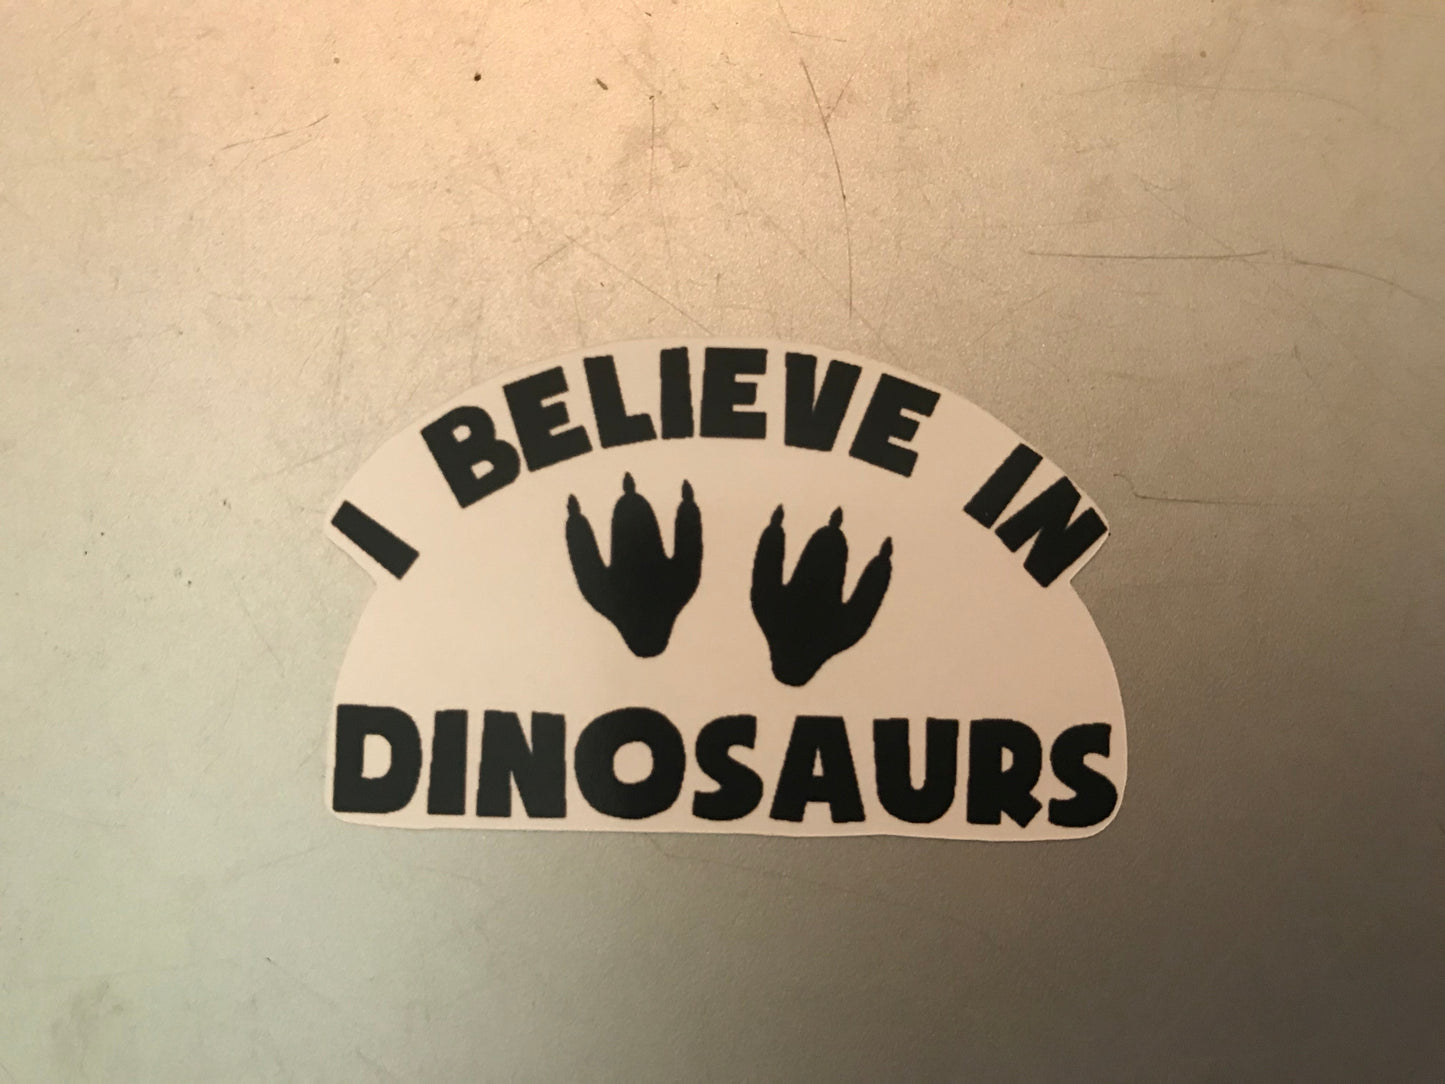 Sticker | I Believe In Dinosaurs | Water bottles, Laptops, Etc